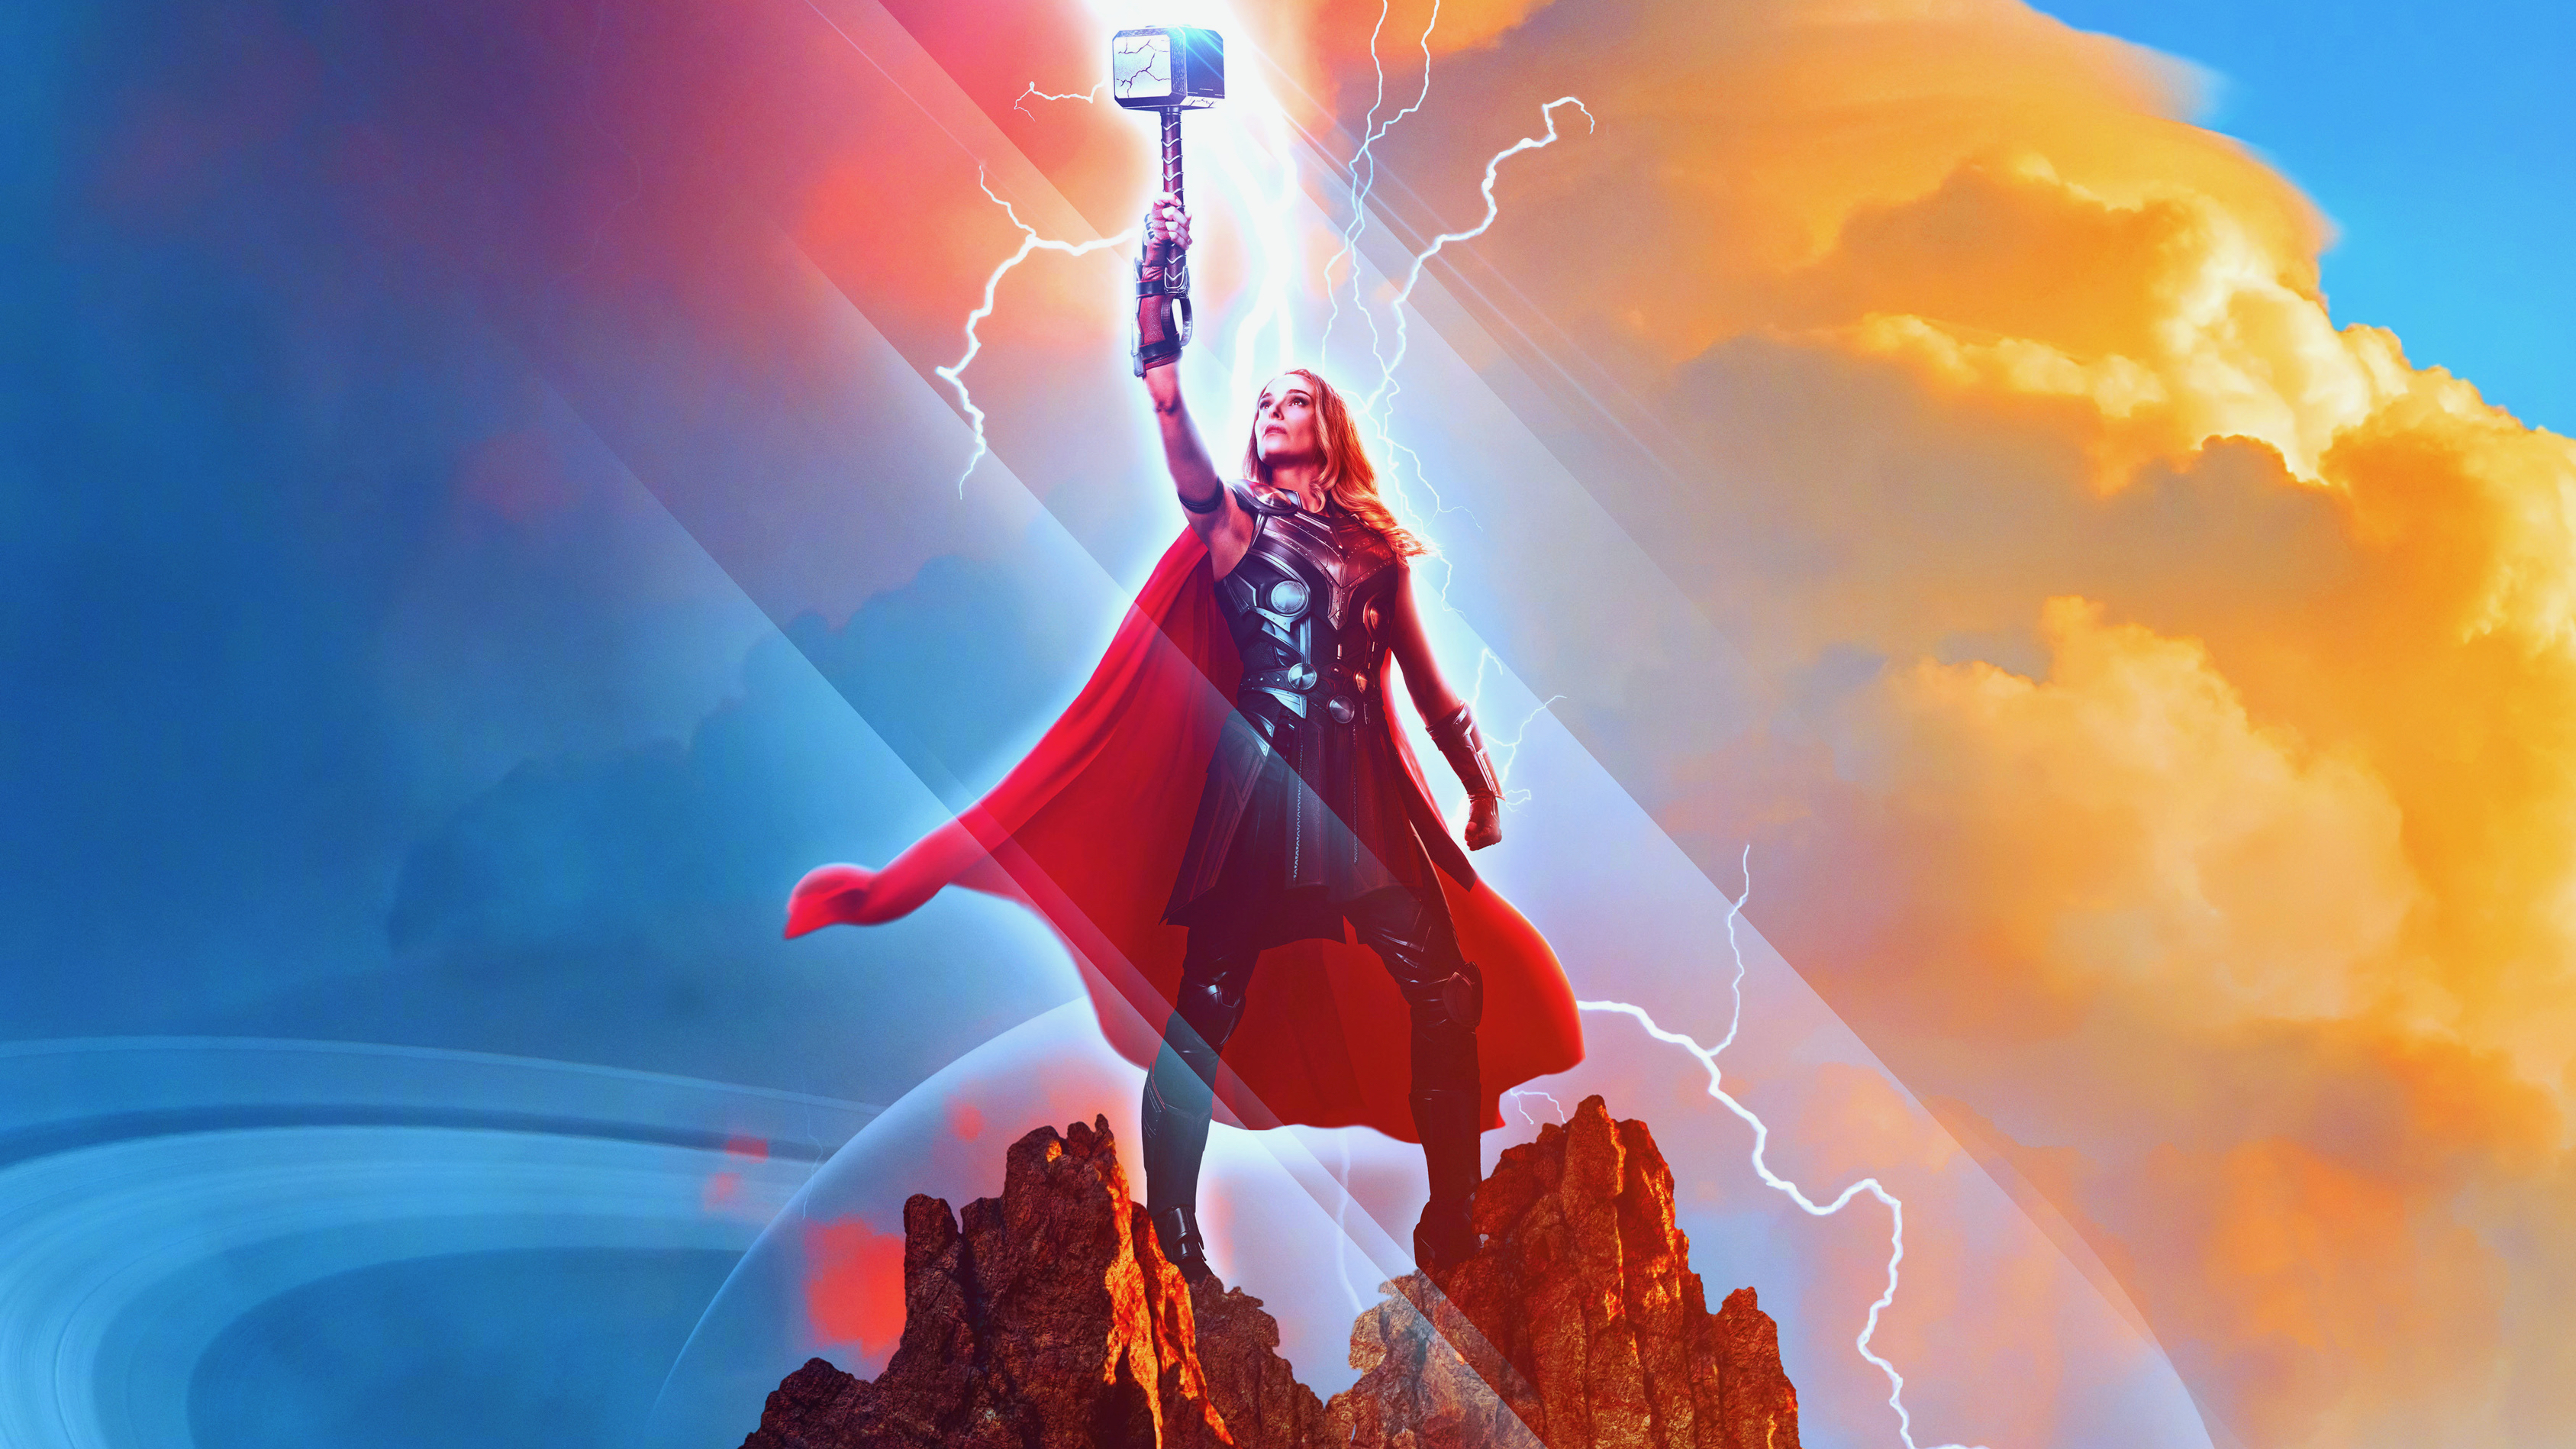 Cập nhật ngay bộ sưu tập hình nền Thor Love and Thunder HD miễn phí để thưởng thức những tuyệt phẩm nghệ thuật của bộ phim đặc sắc này!